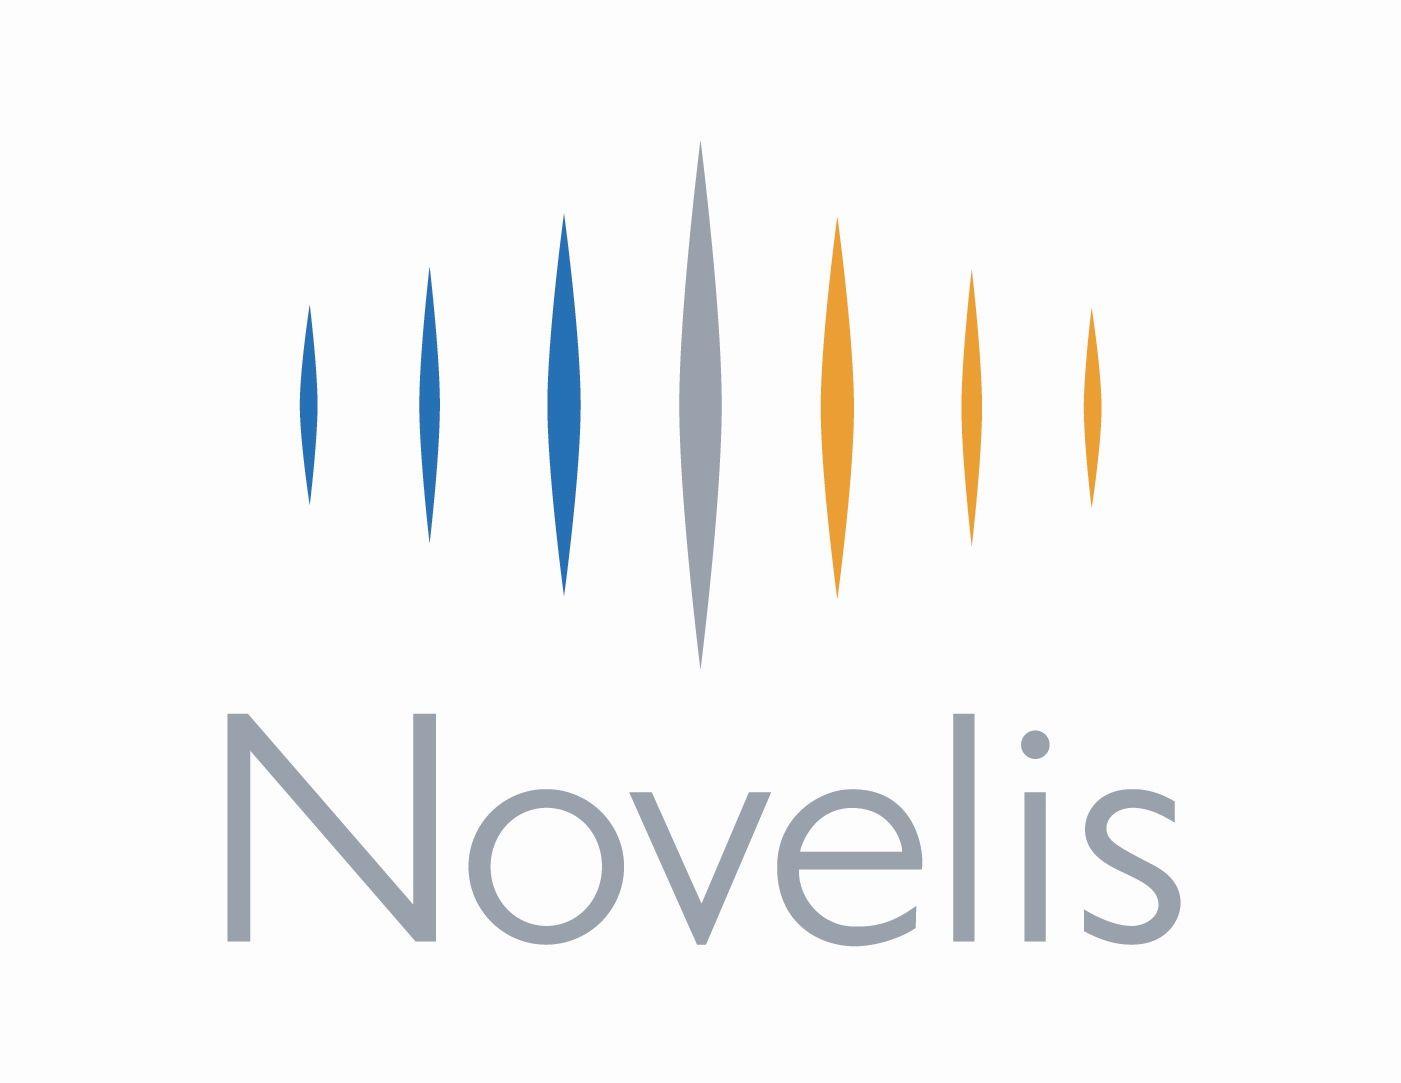 Novelis Logo - Novelis Logos